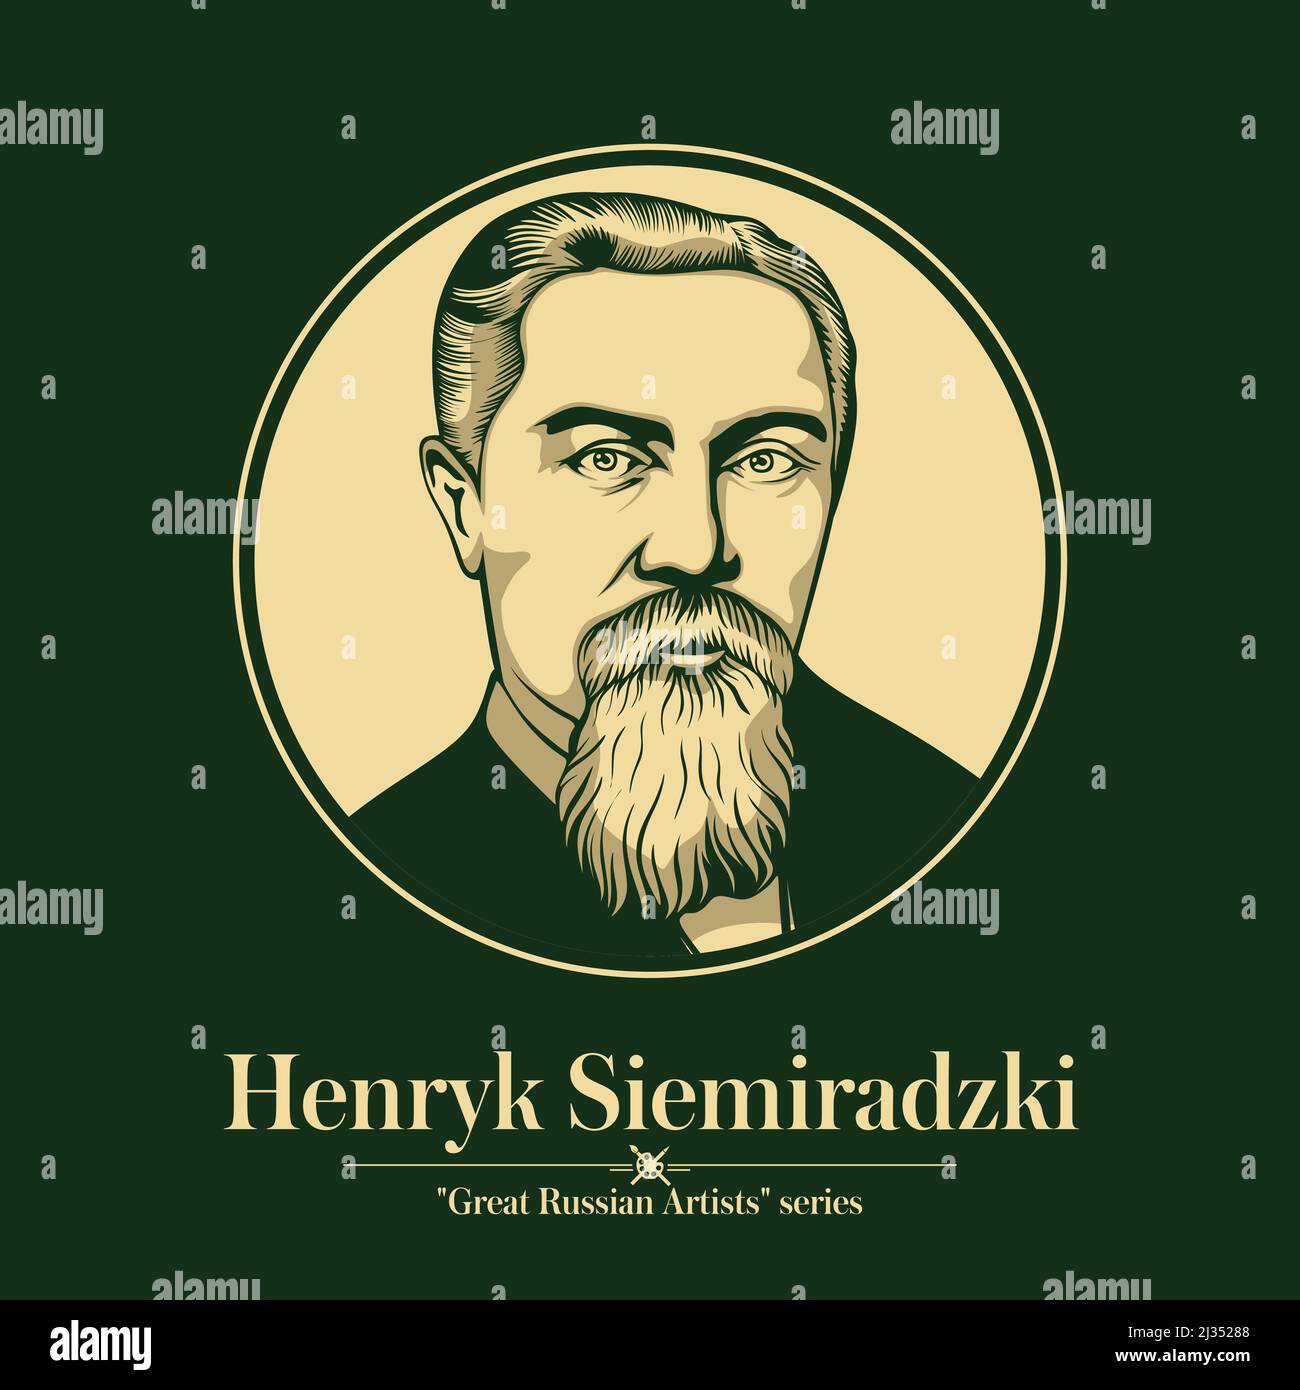 Grand artiste russe. Henryk Siemiradzki était un peintre polonais et russe basé à Rome, dont on se souviendra le mieux pour son art académique monumental Illustration de Vecteur